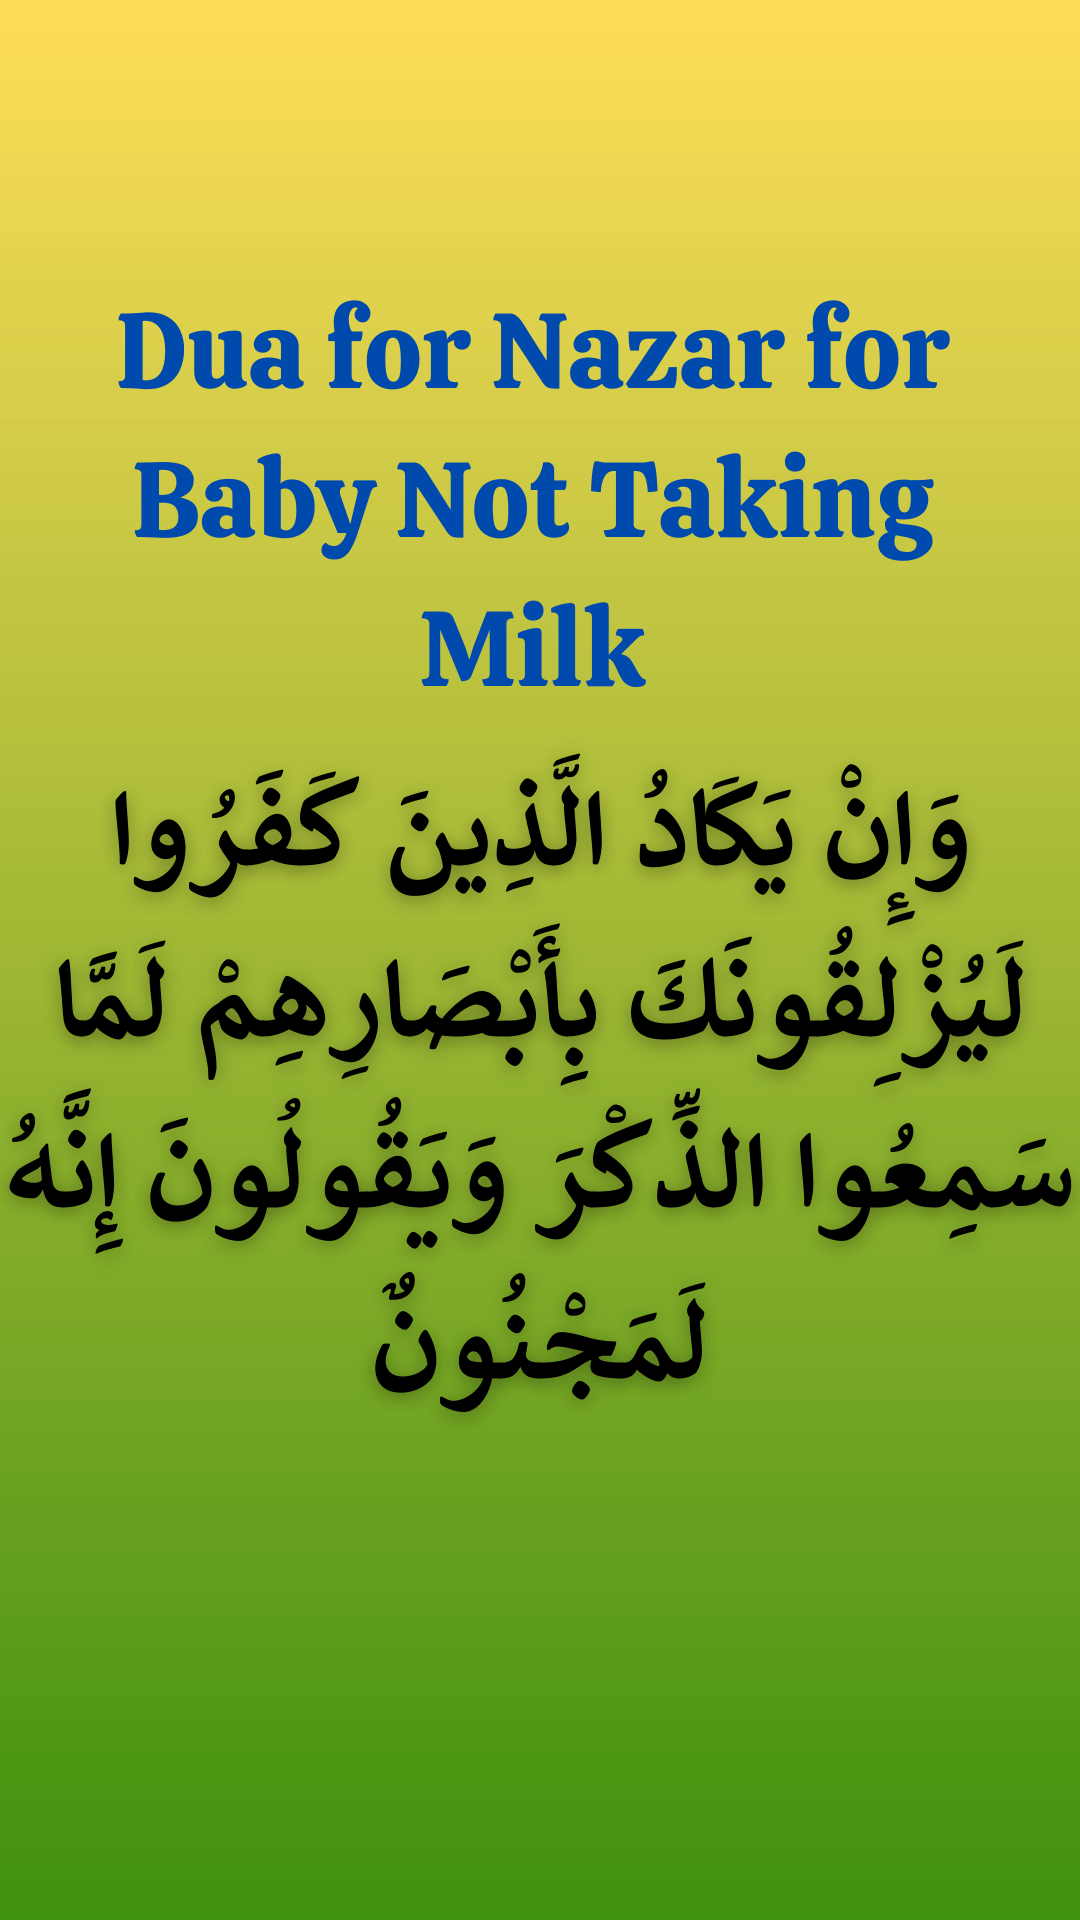 Dua for Nazar for Baby Not Taking Milk